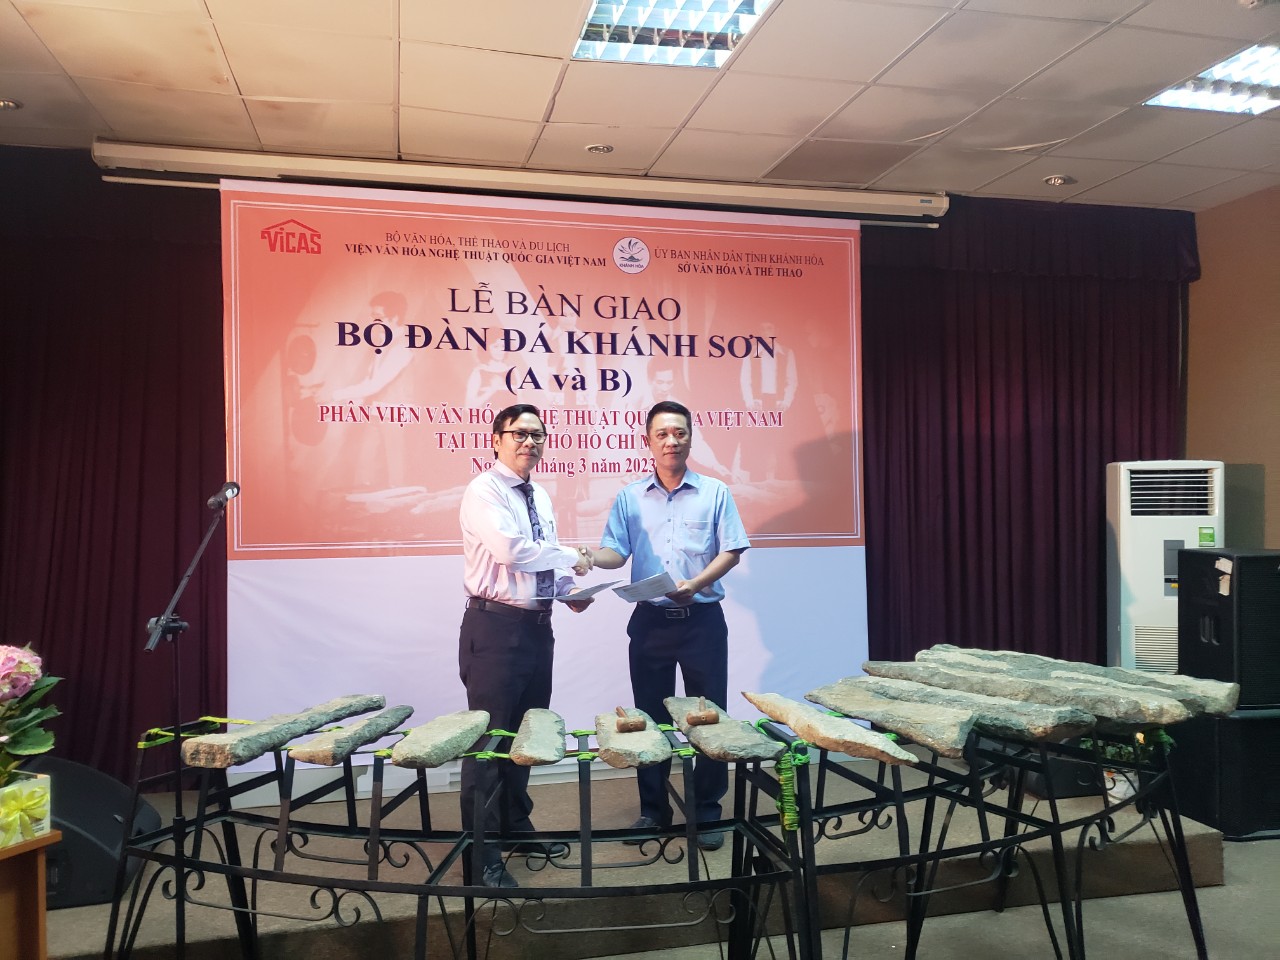 ãnh đạo Bảo tàng tỉnh Khánh Hòa (bên phải) tiếp nhận bàn giao hai bộ đàn đá Khánh Sơn từ lãnh đạo Phân viện Văn hóa Nghệ thuật quốc gia Việt Nam tại TP Hồ Chí Minh